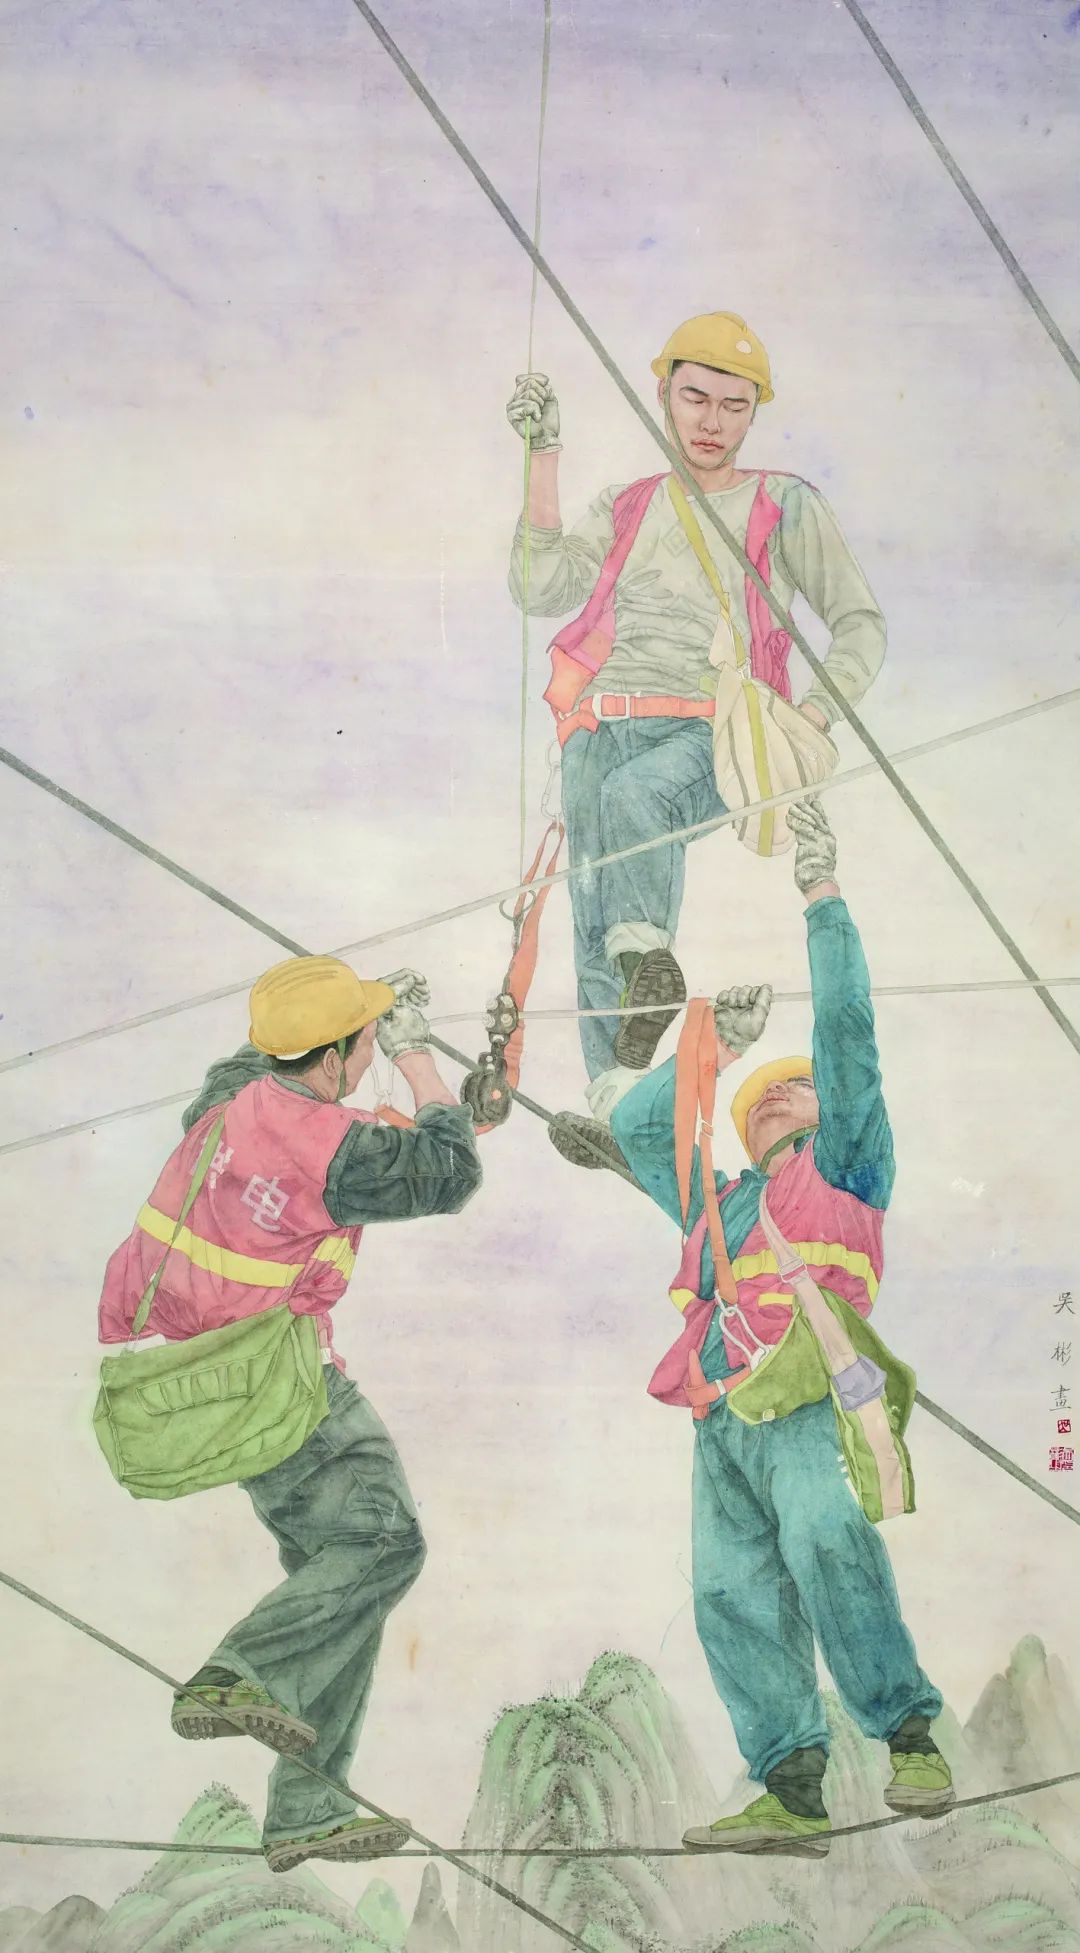 王少伦(广州铁路文化宫)南国和风绘画2黄迎宏(长沙多元集团)高铁时代